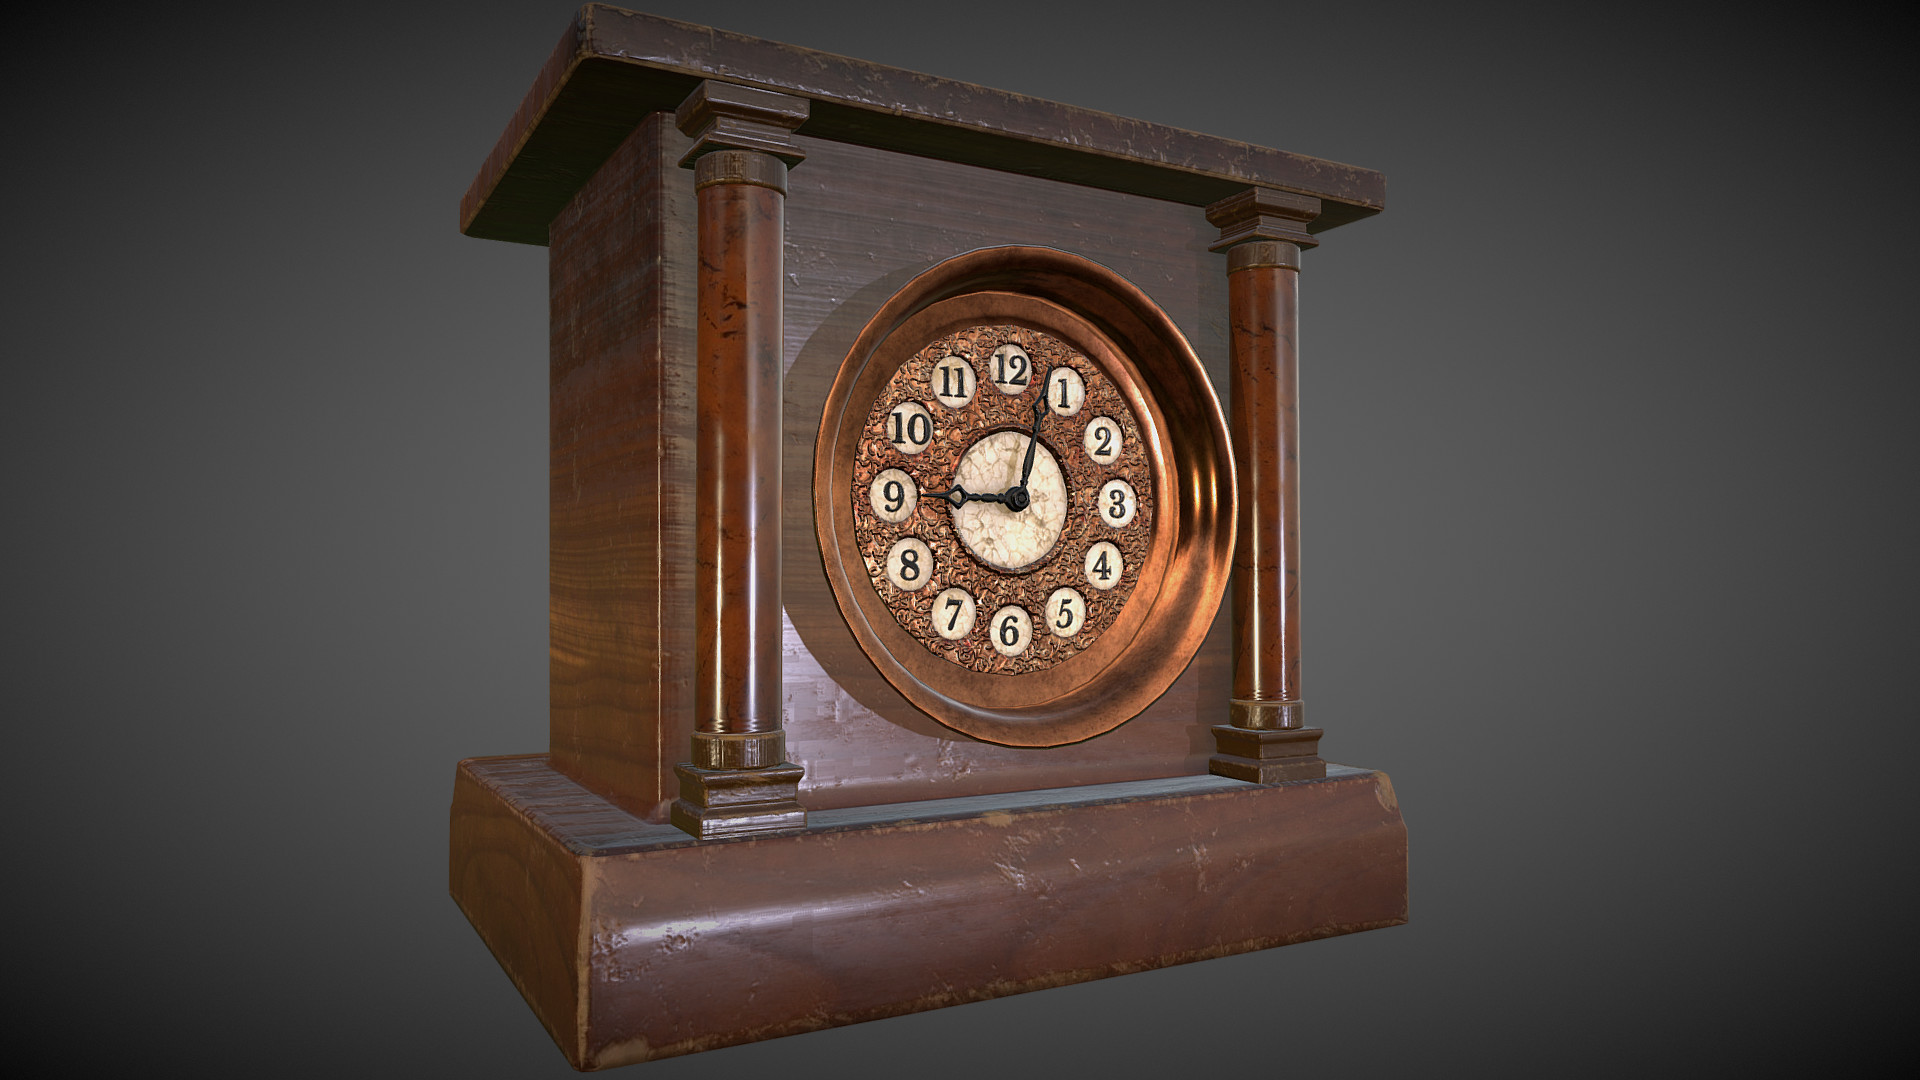 ArtStation - Old Antique Clock, Christy McLaughlin